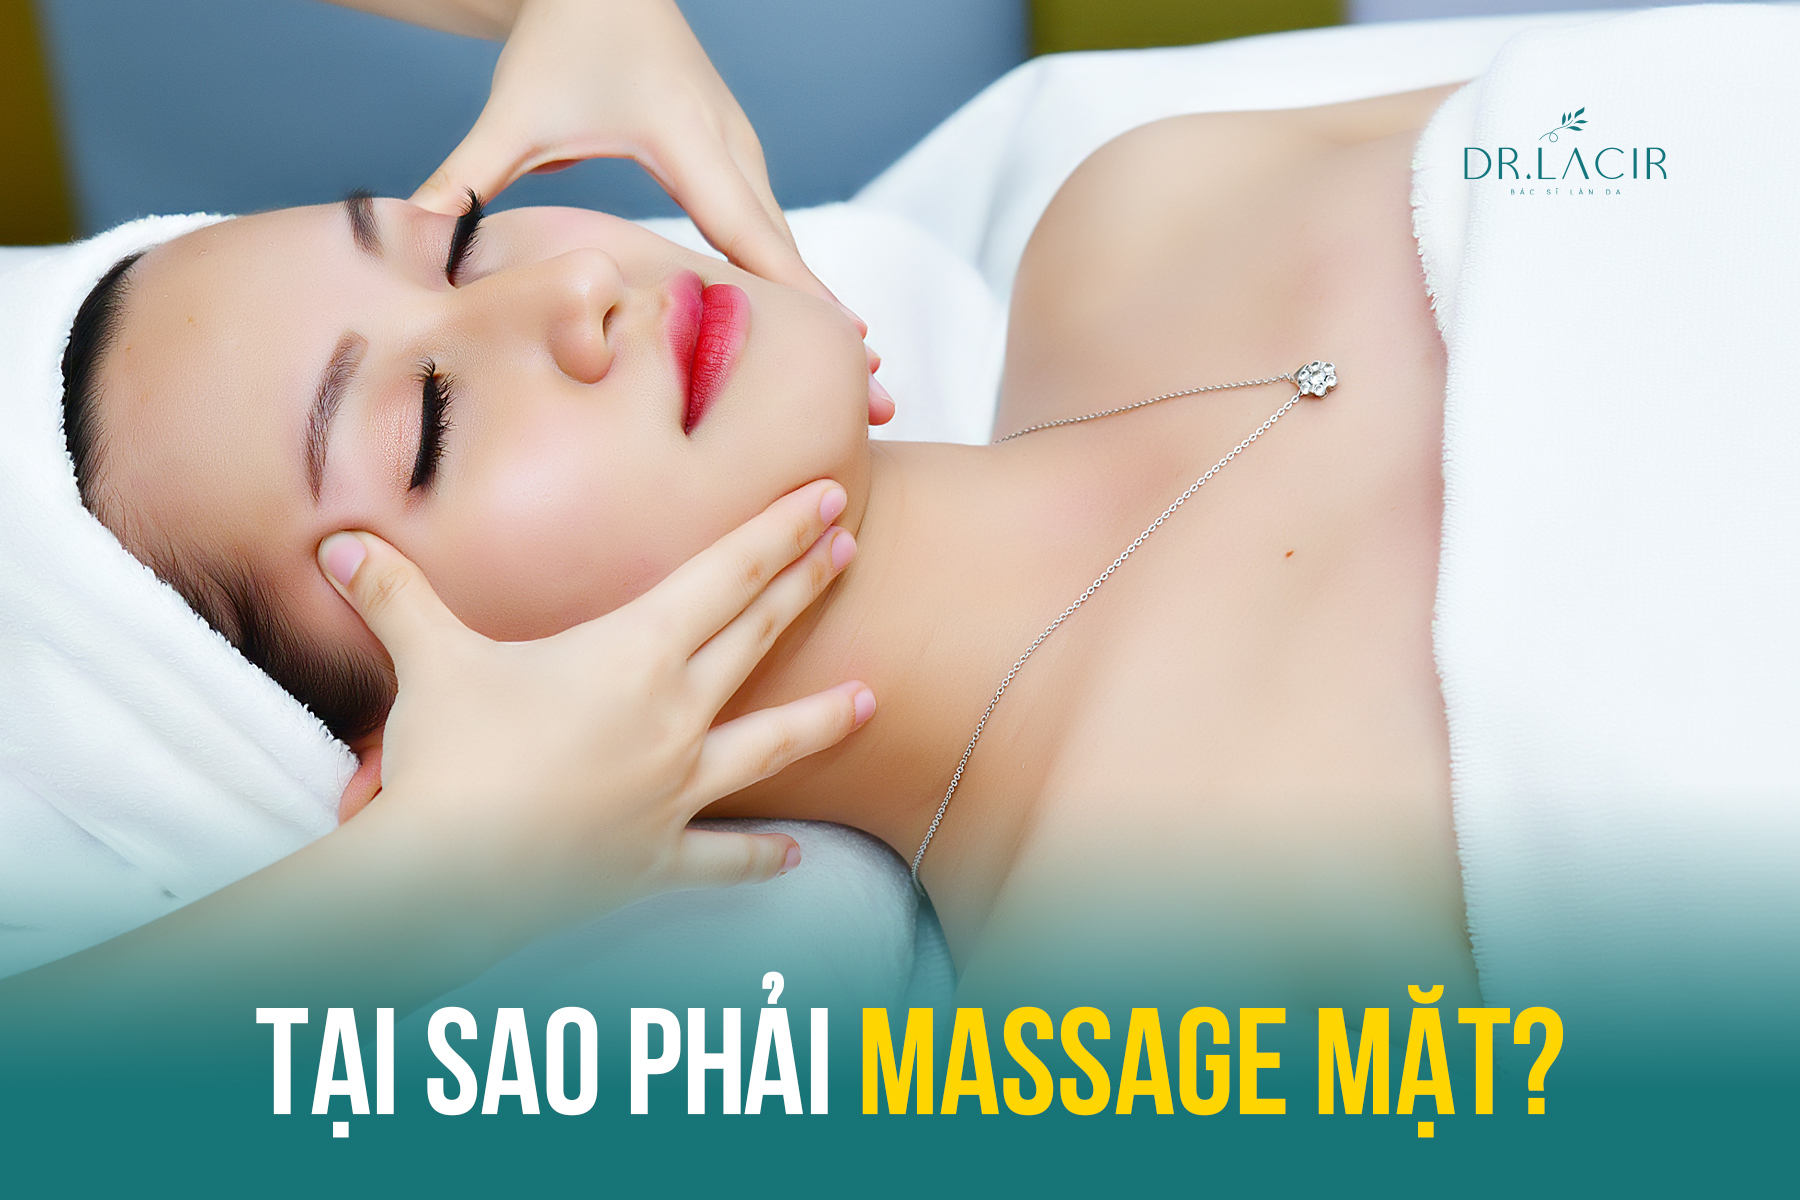 Tại sao phải massage mặt và những công dụng của massage mặt